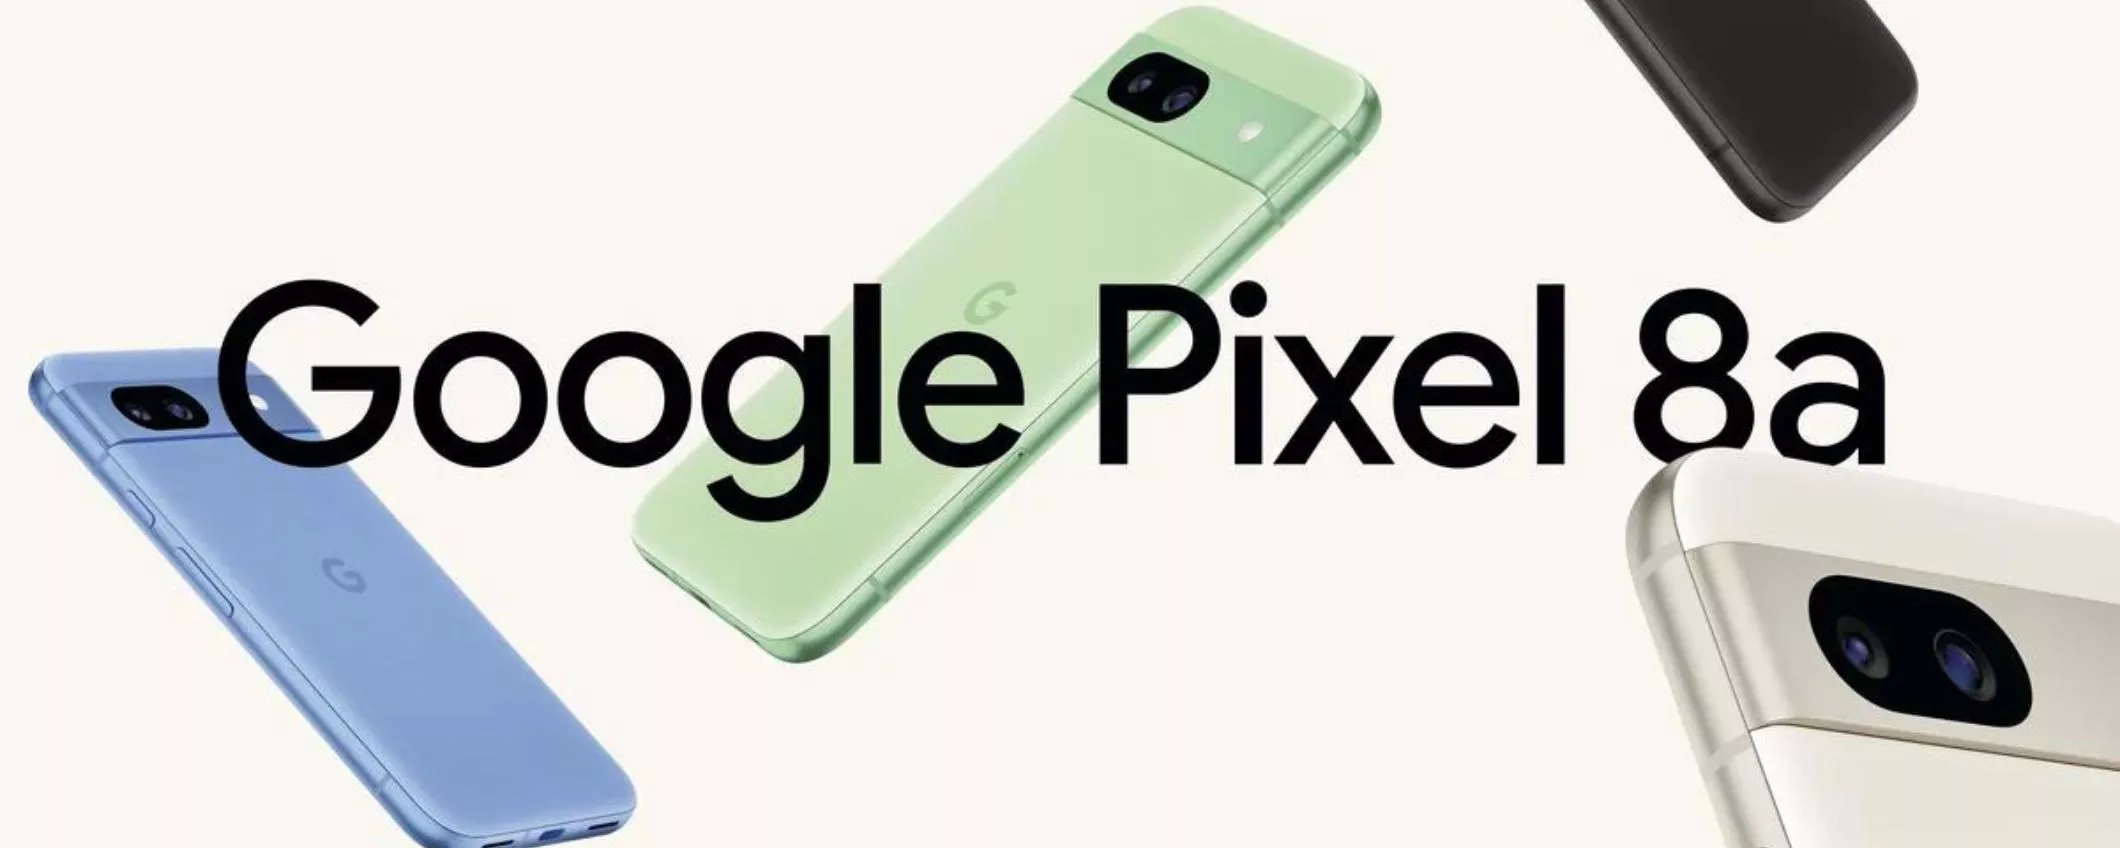 Google Pixel 8A si aggiorna: ancora più funzioni AI